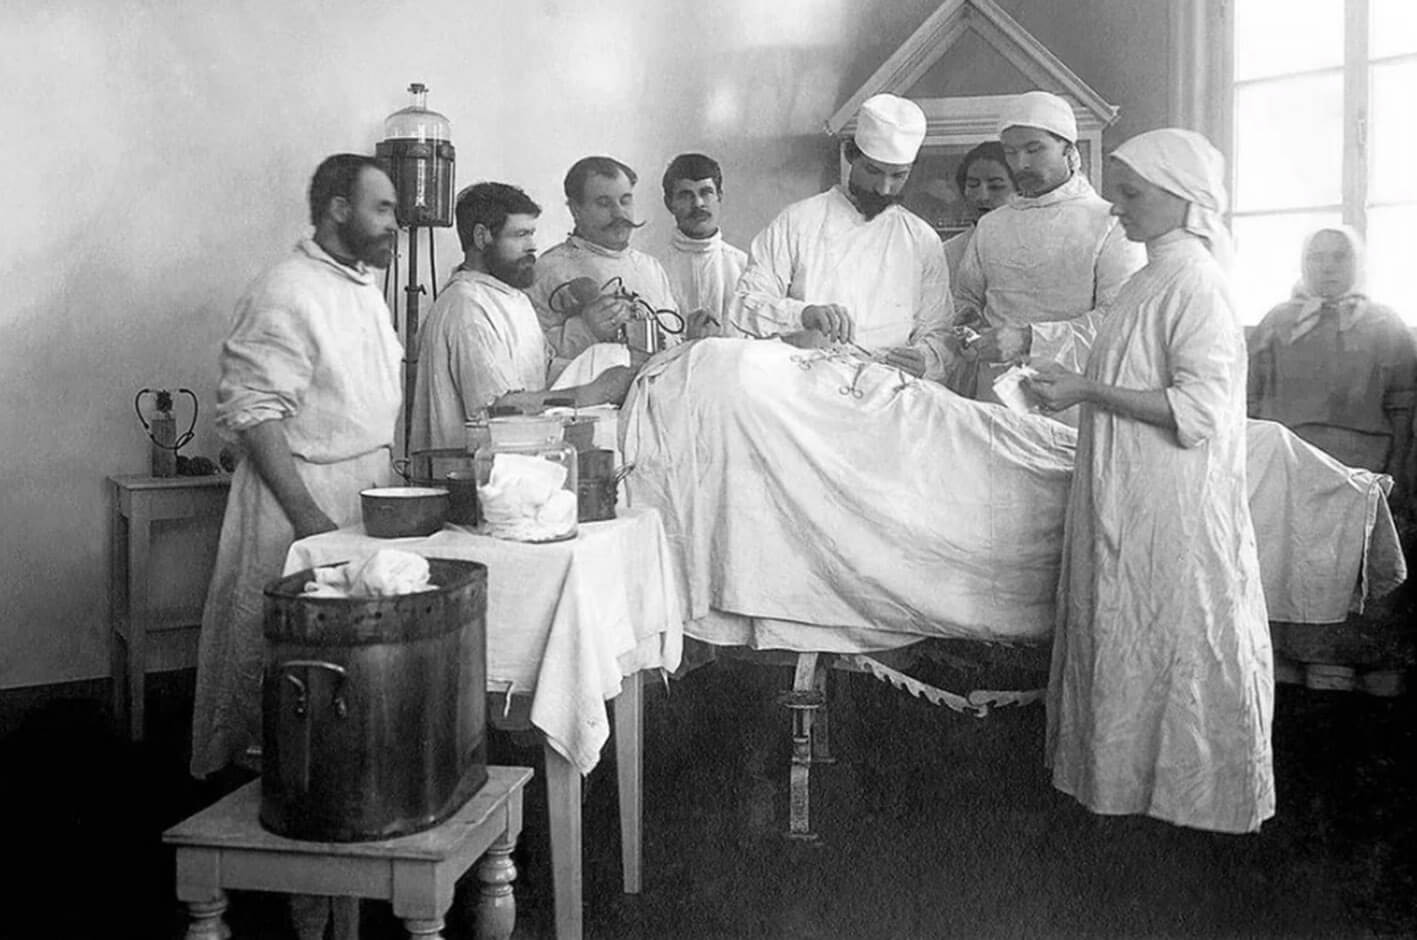 Первая операция в истории. Госпиталь 19 век Россия.